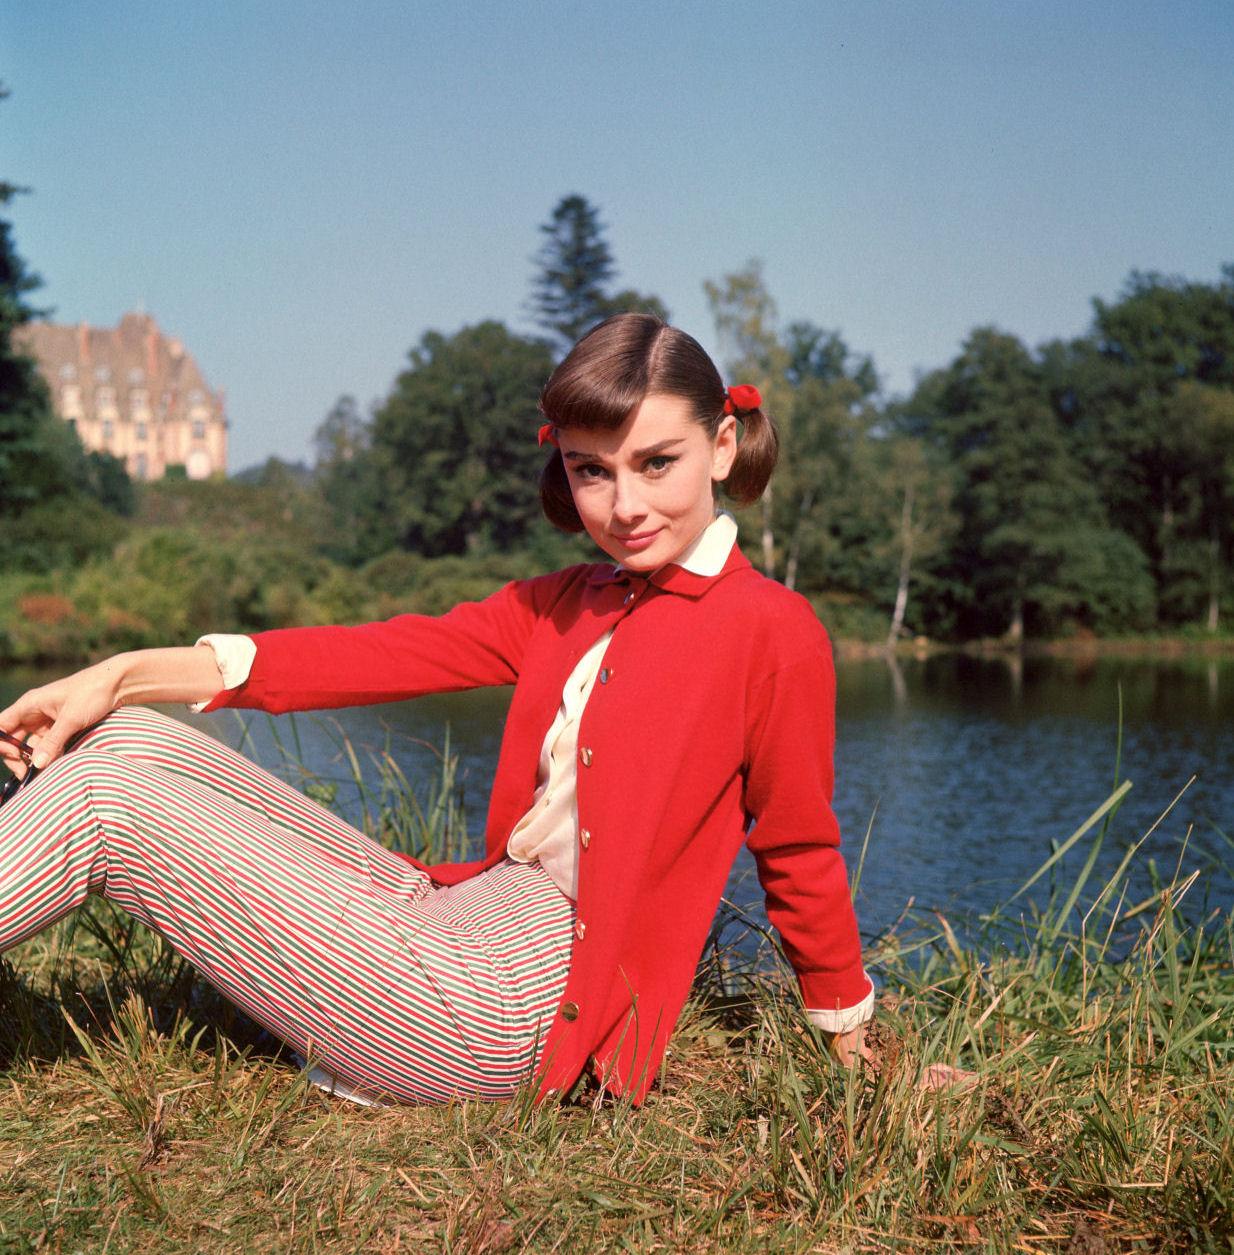 Audrey Hepburn - Audrey Hepburn Photo (21767019) - Fanpop